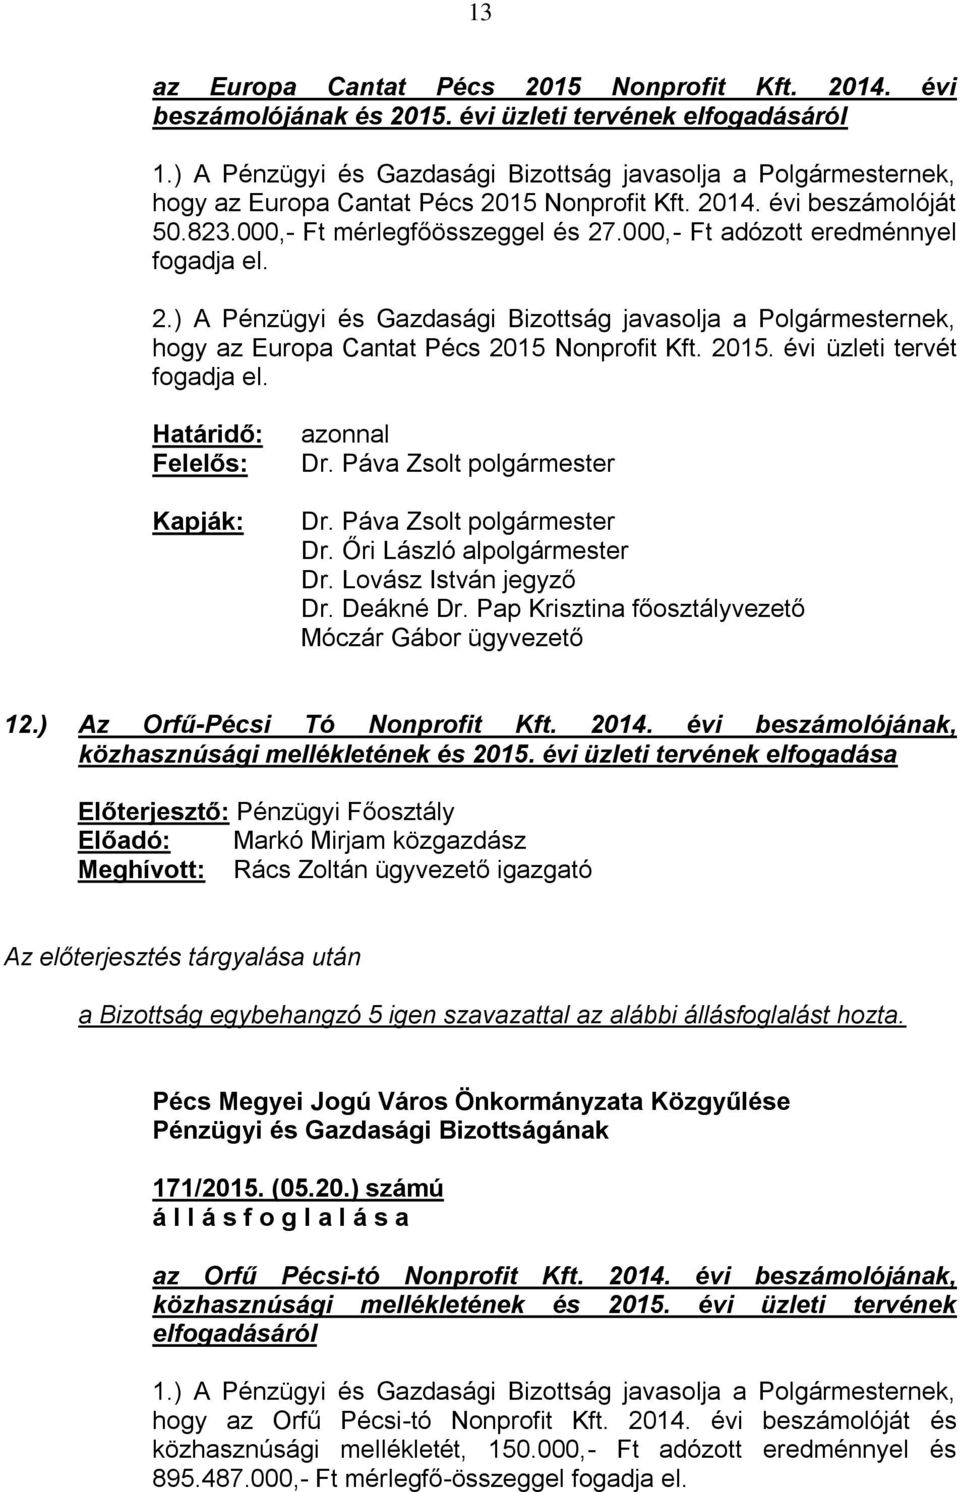 000,- Ft adózott eredménnyel fogadja el. 2.) A Pénzügyi és Gazdasági Bizottság javasolja a Polgármesternek, hogy az Europa Cantat Pécs 2015 Nonprofit Kft. 2015. évi üzleti tervét fogadja el.